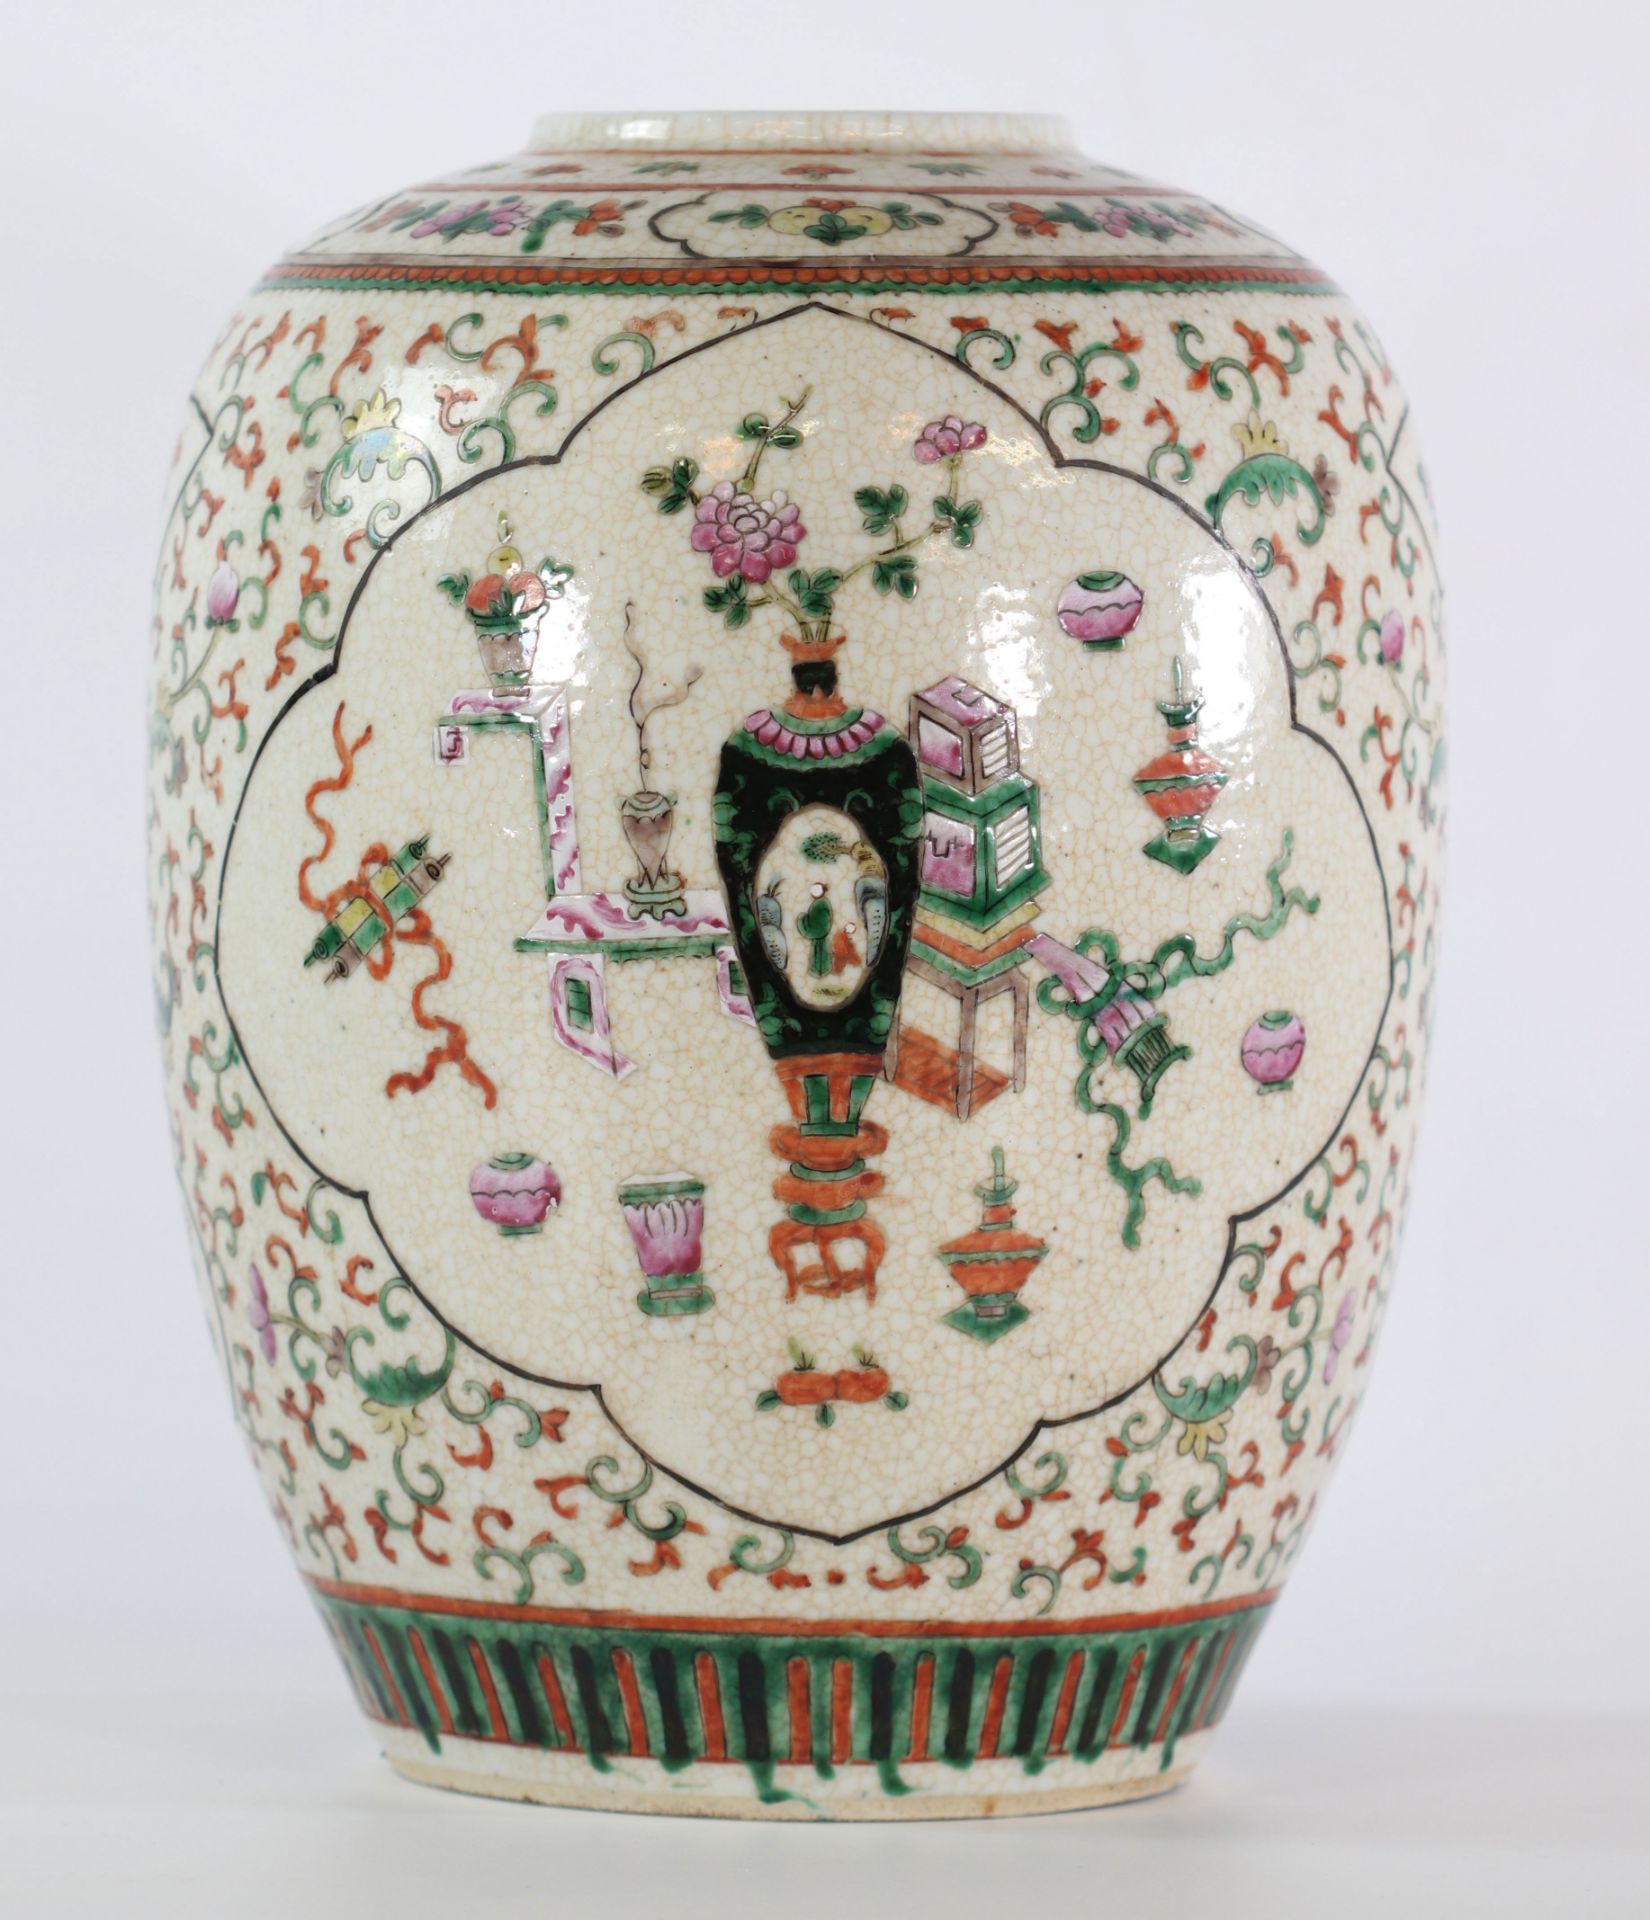 China cracked porcelain vase 19th century furniture decor - Image 3 of 5